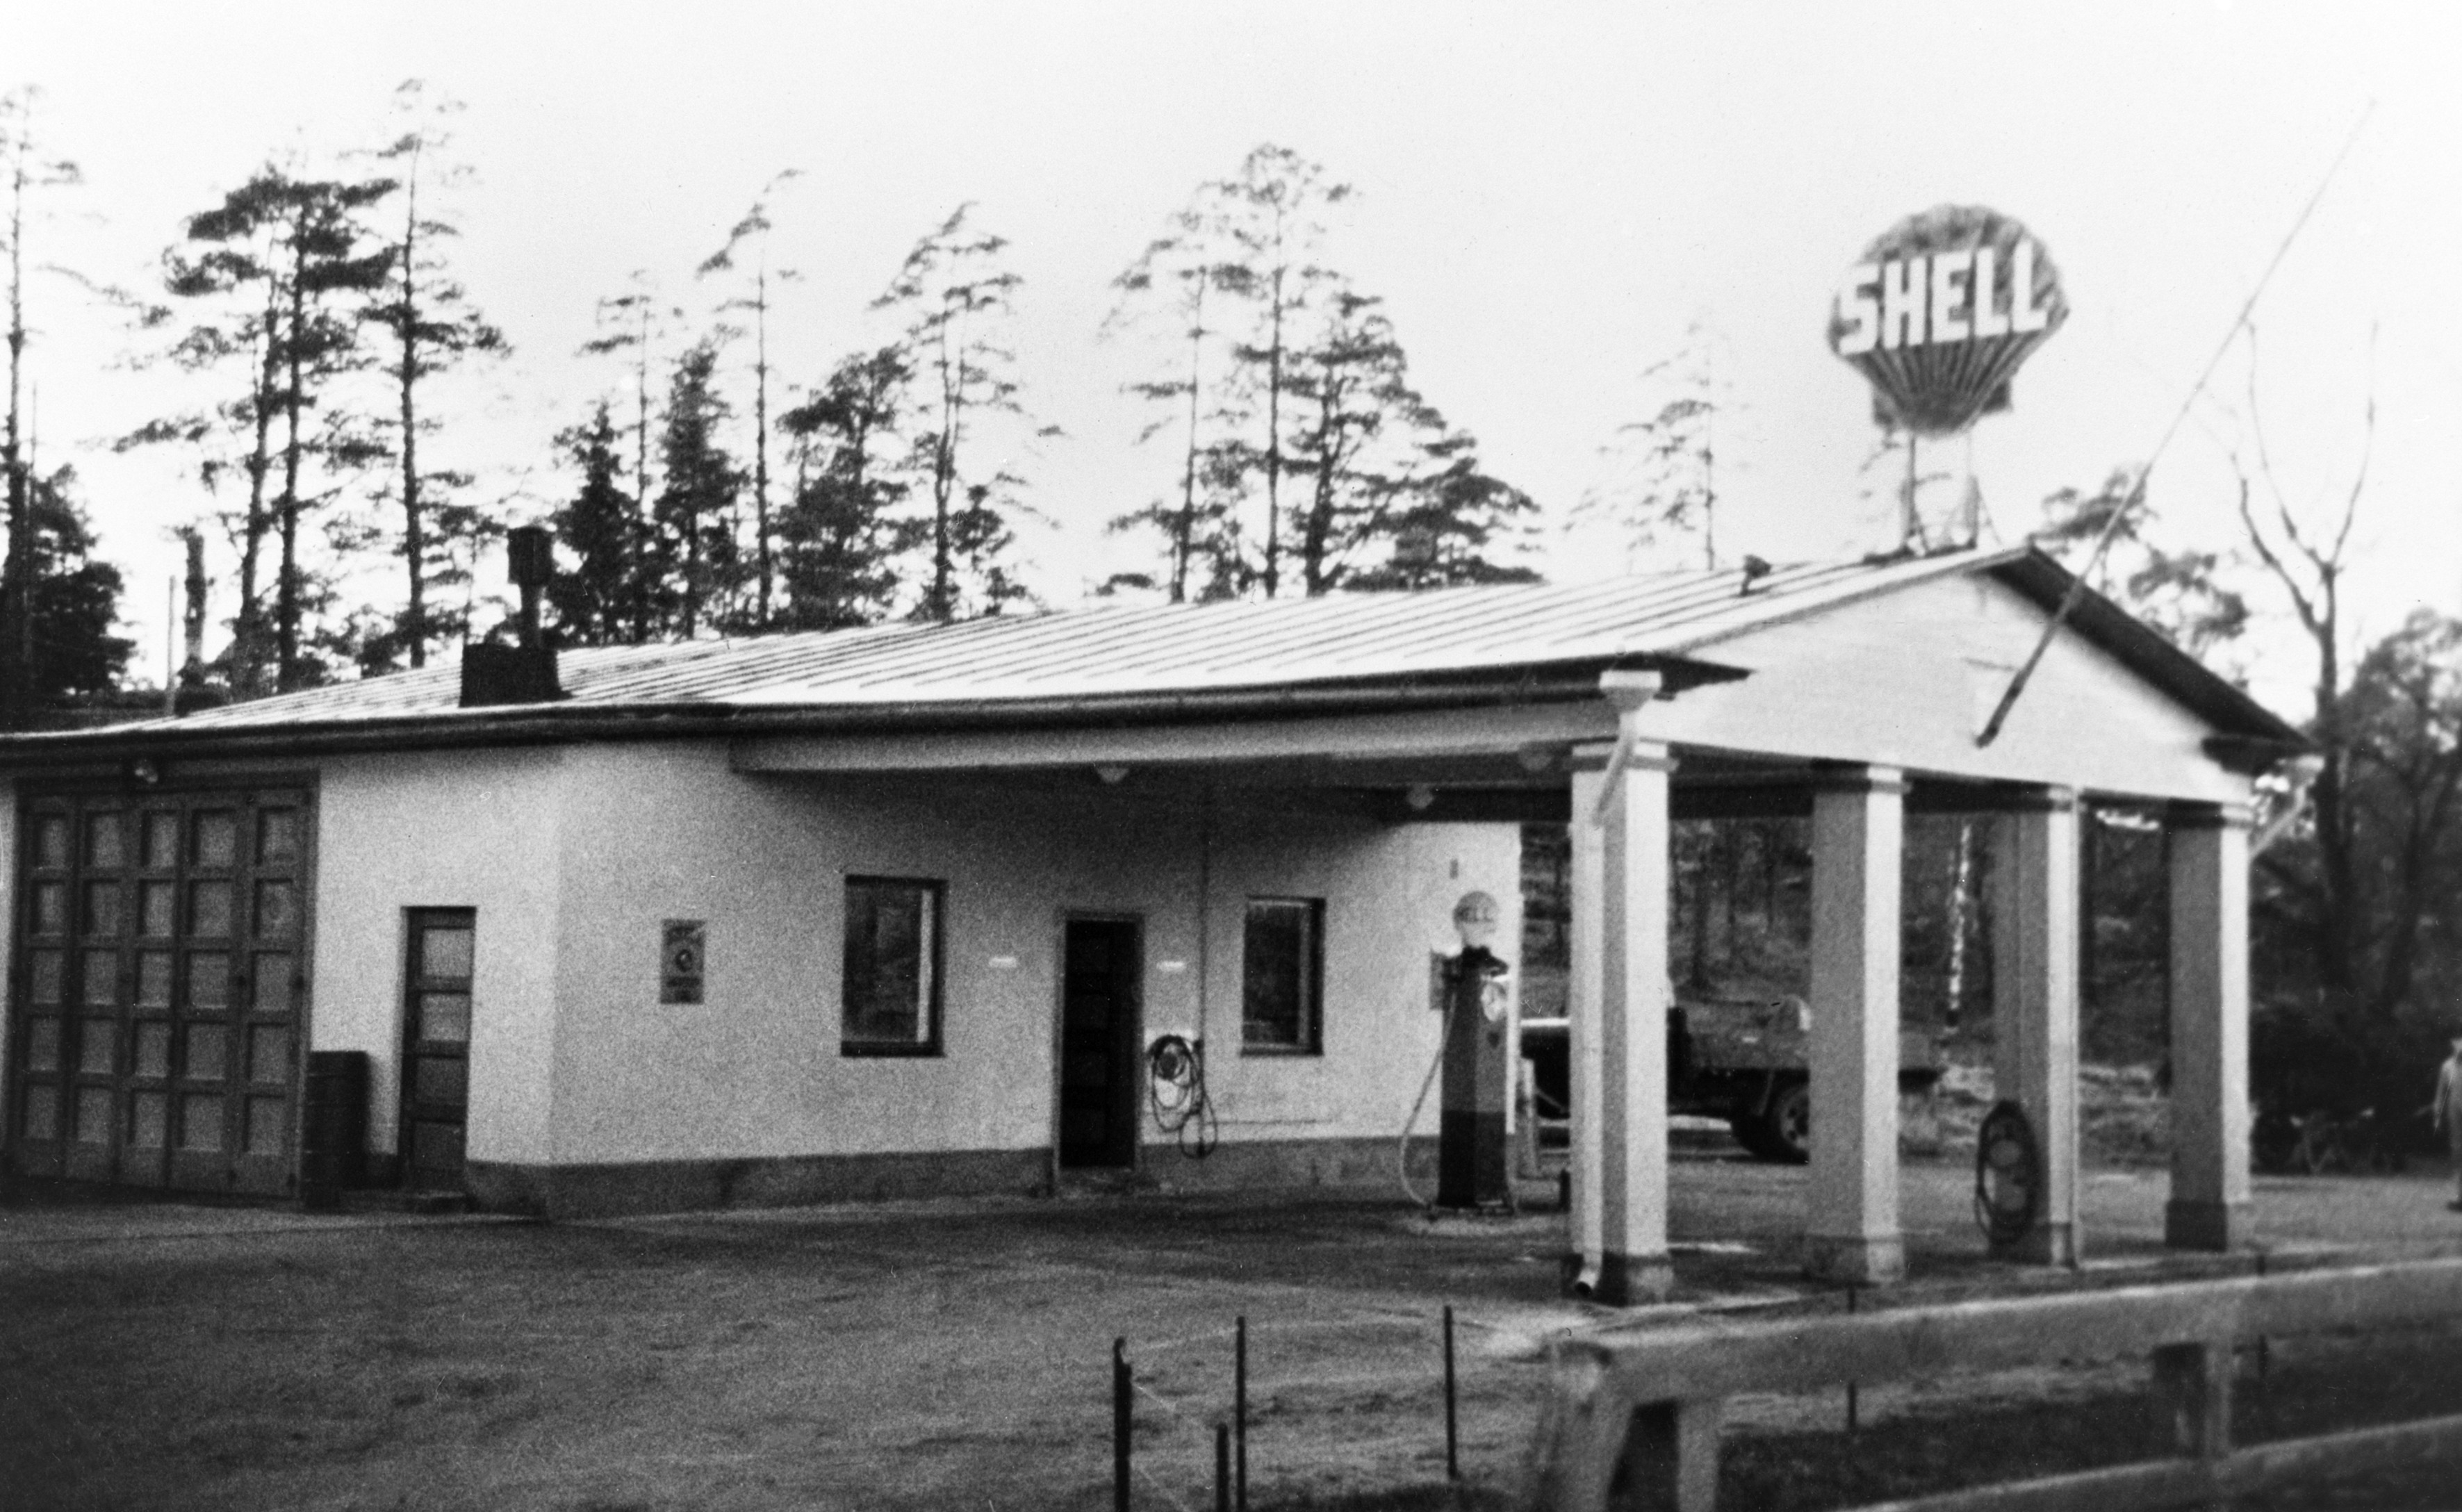 Oy Shell Ab:n huoltoasema, Viiden pennin tulli, Turuntie 80 (Mannerheimintie 108). Rakennettu 1920-luvun lopulla.